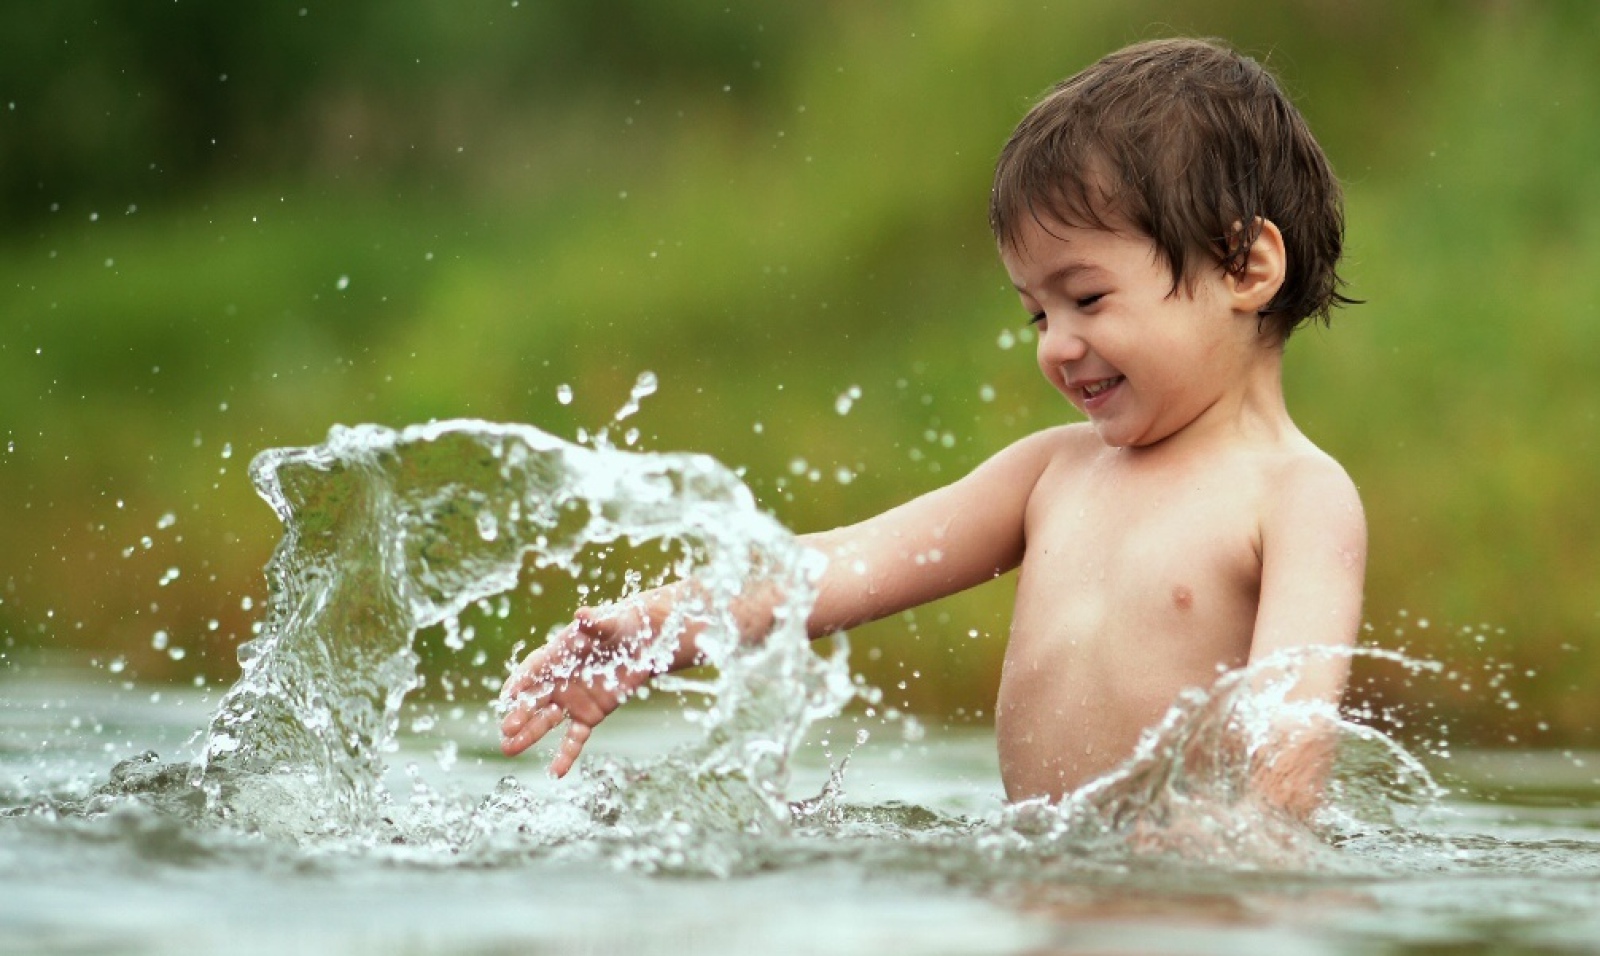 Купание. Дети брызгаются водой. Дети купаются в реке. Купание закаливание. Дети моются в реке.